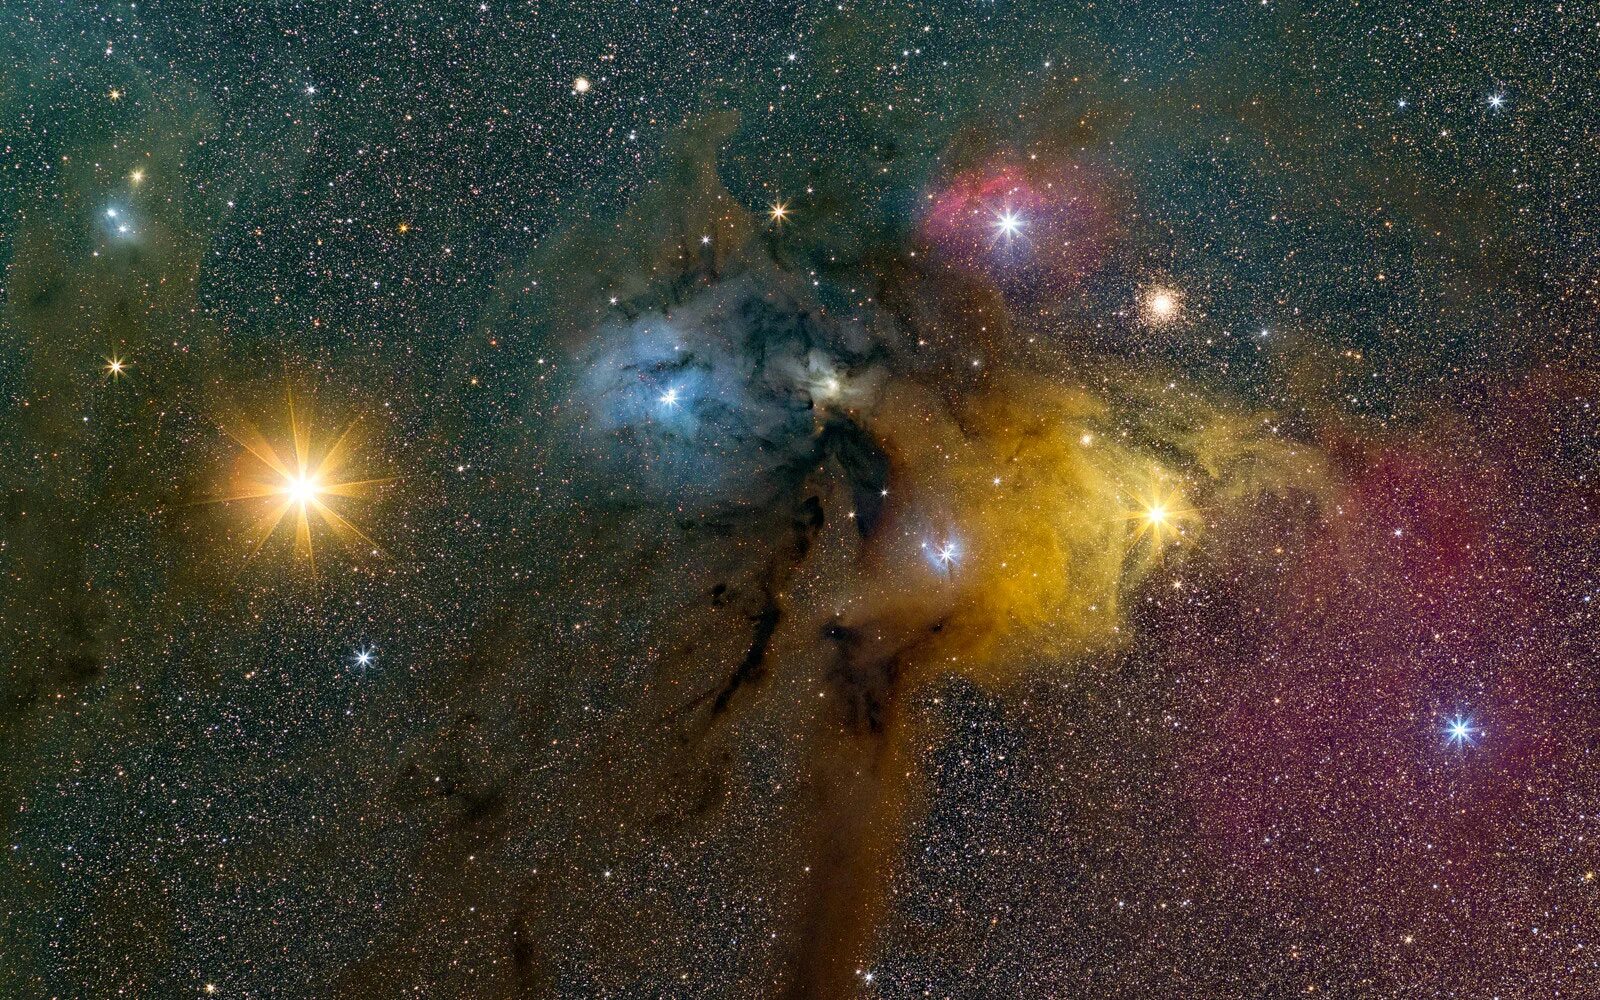 Молекулярное облако РО Змееносца. Молекулярное облако РО Змееносца в созвездии. Туманность РО Змееносца. Антарес скопление. Солнце яркая звезда галактики